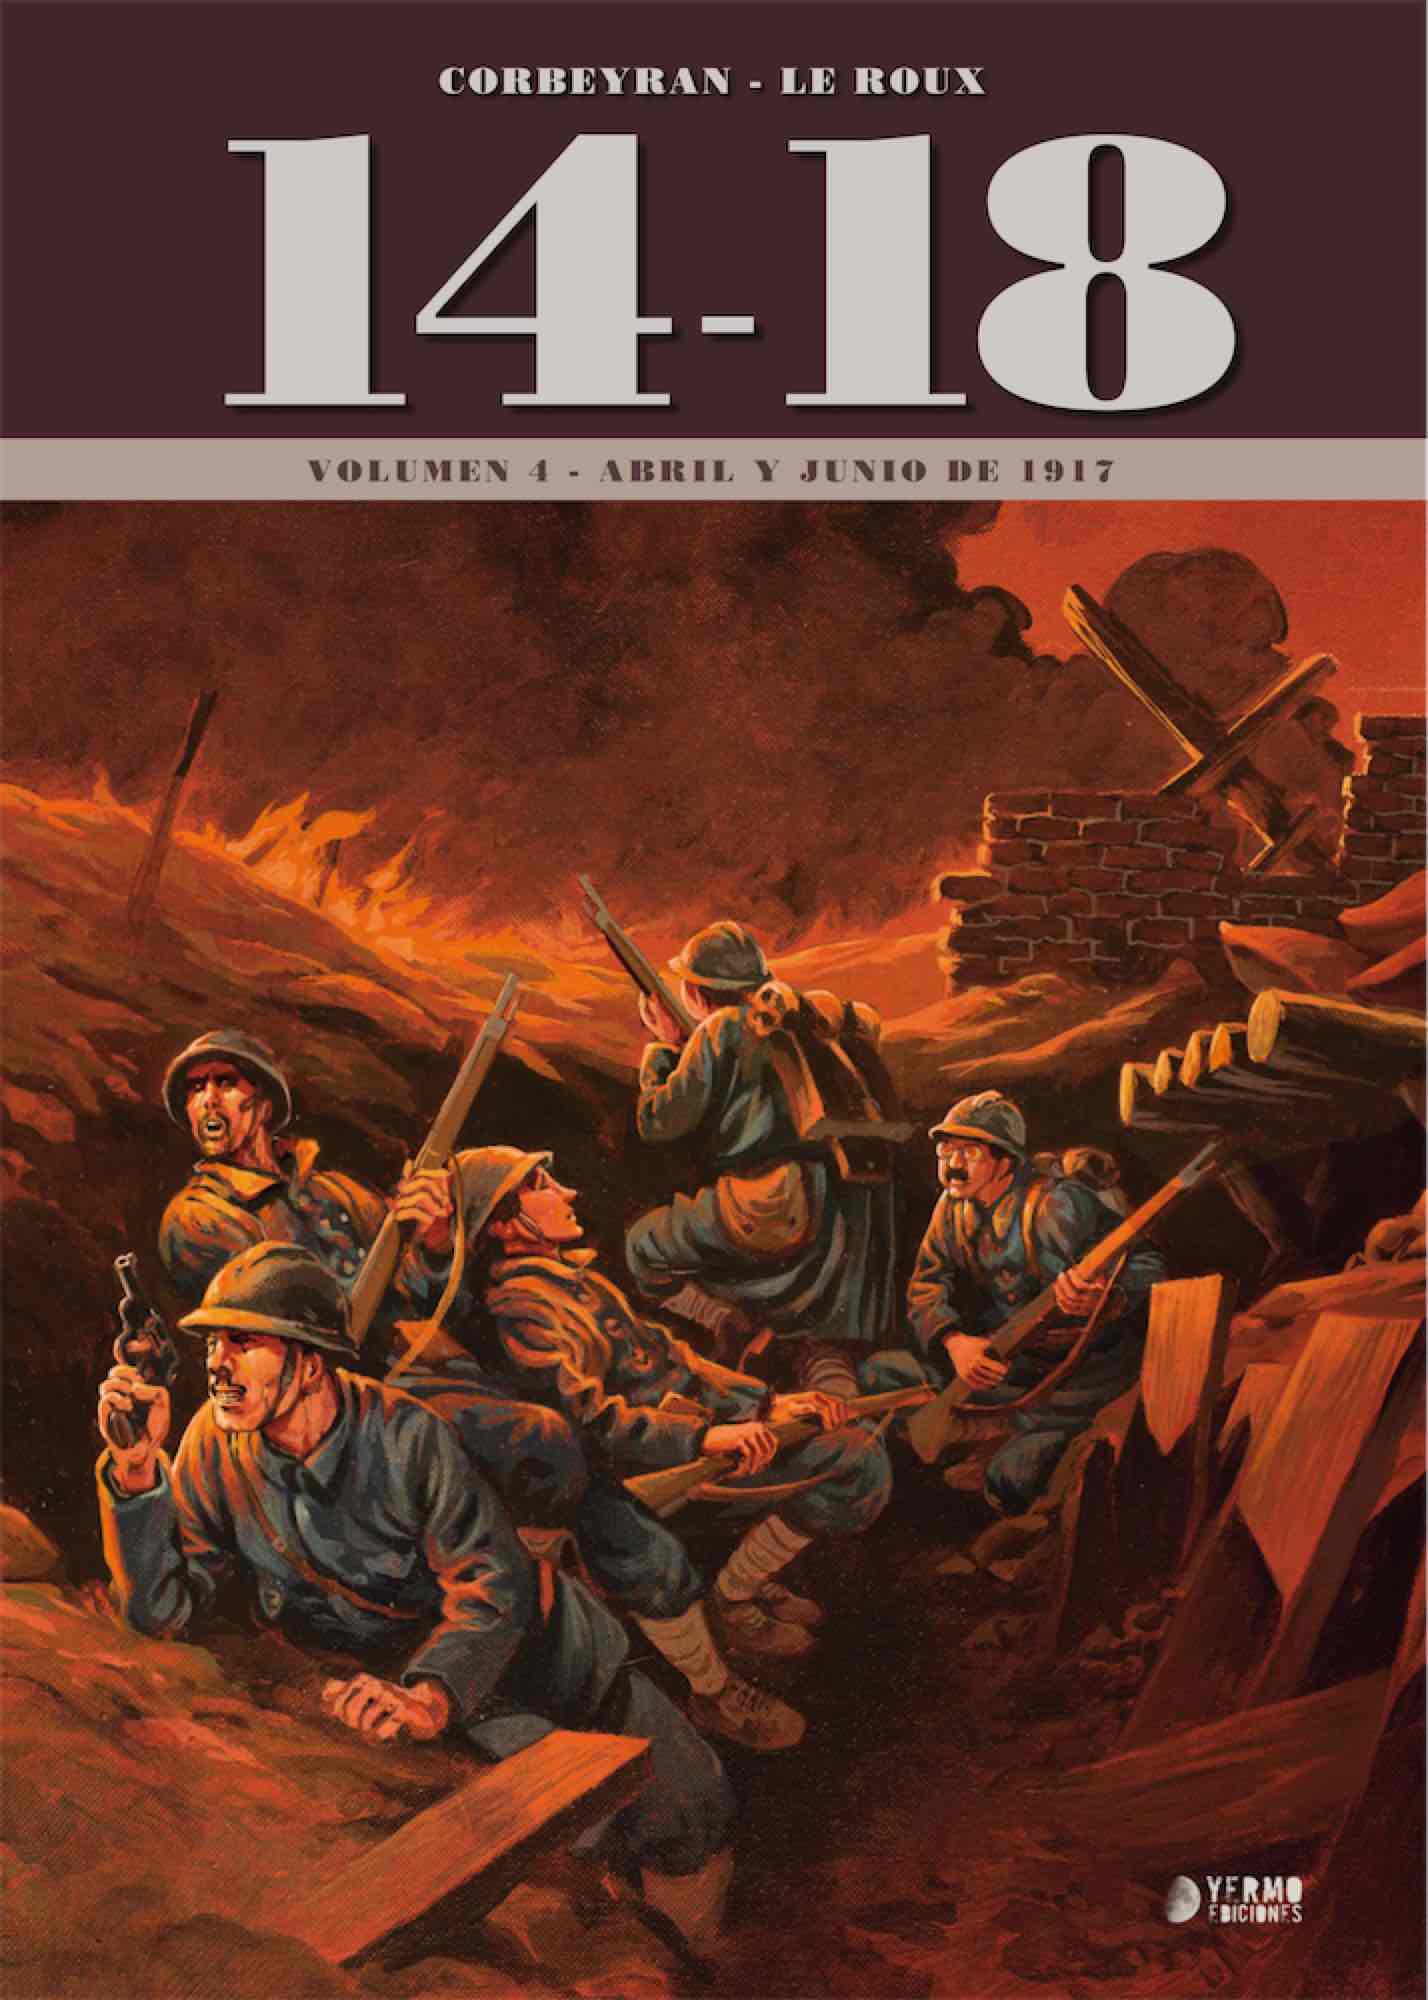 14-18 VOL. 4 (ABRIL Y JUNIO DE 1917)